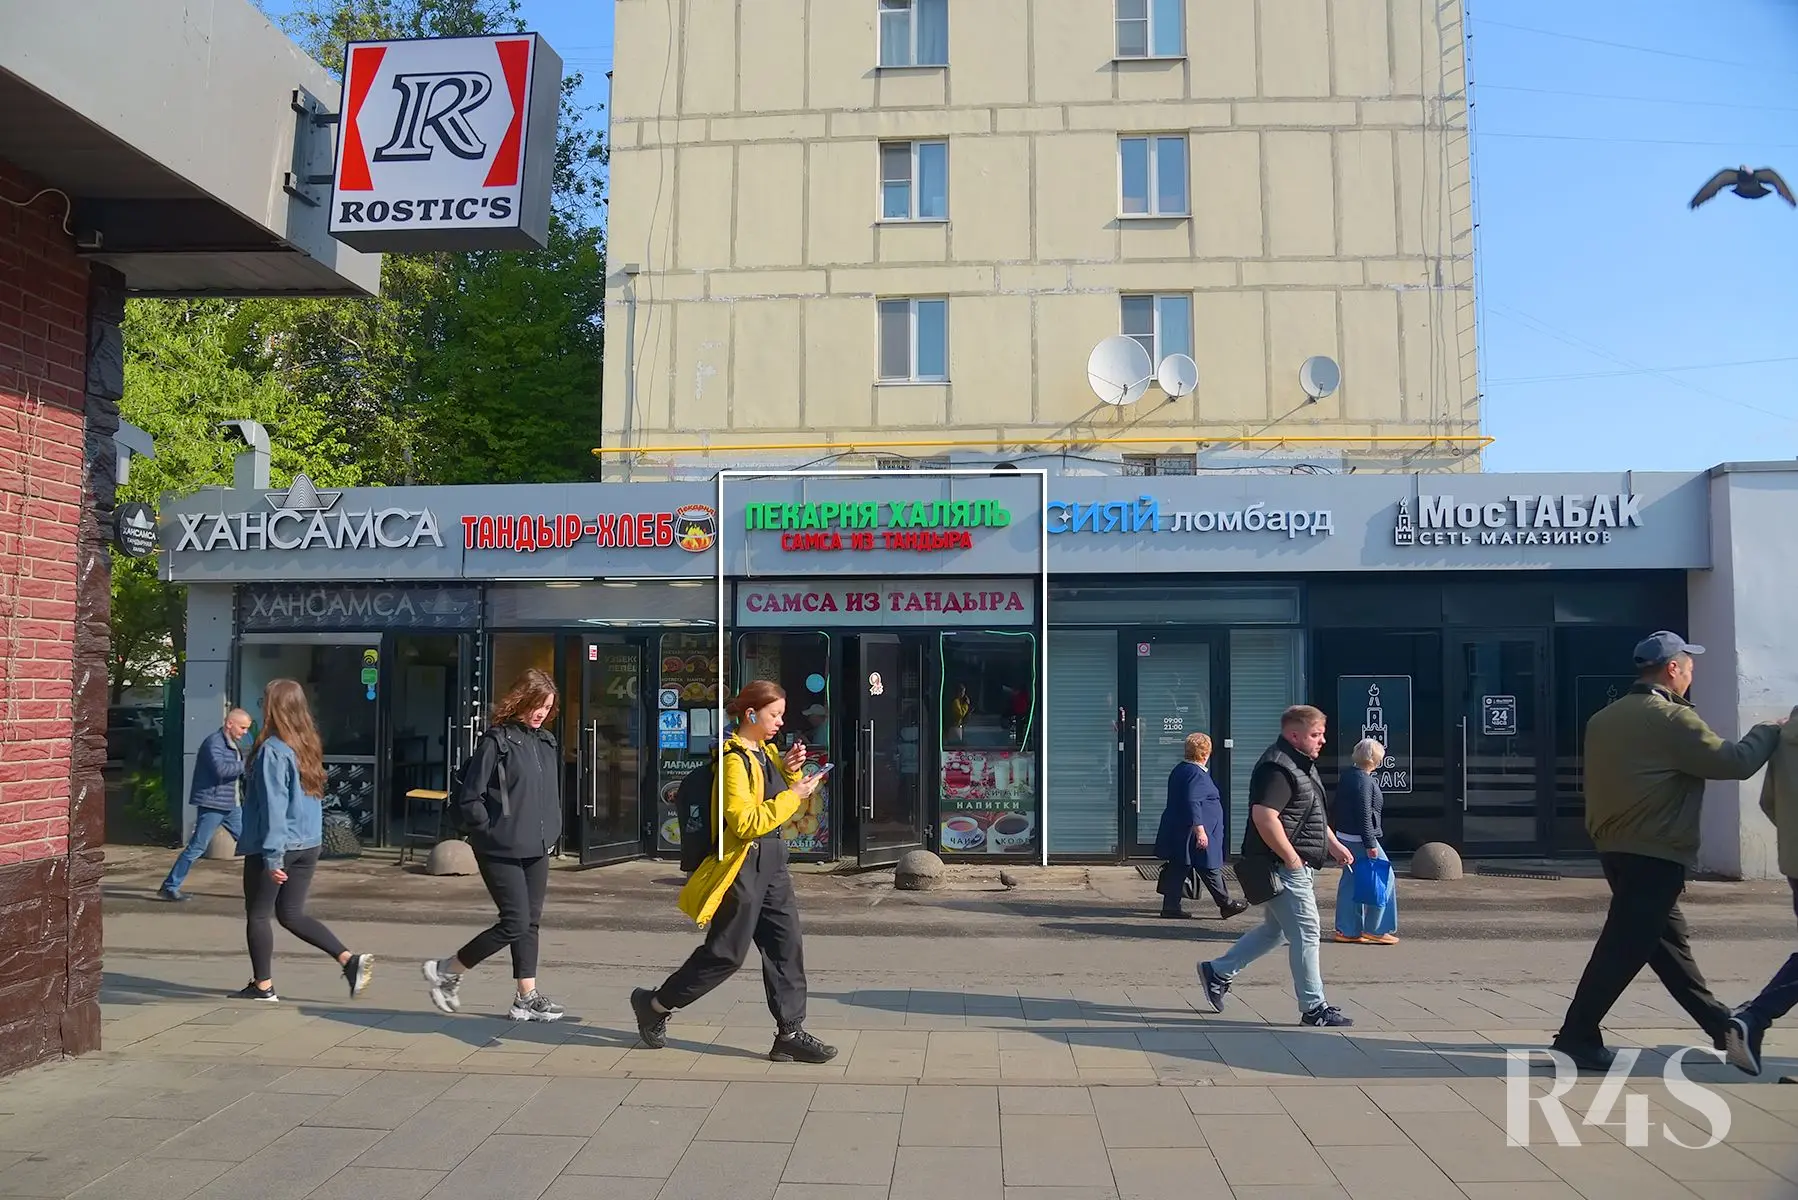 Продажа готового арендного бизнеса площадью 22 м2 в Москве: Уральская, 1 R4S | Realty4Sale